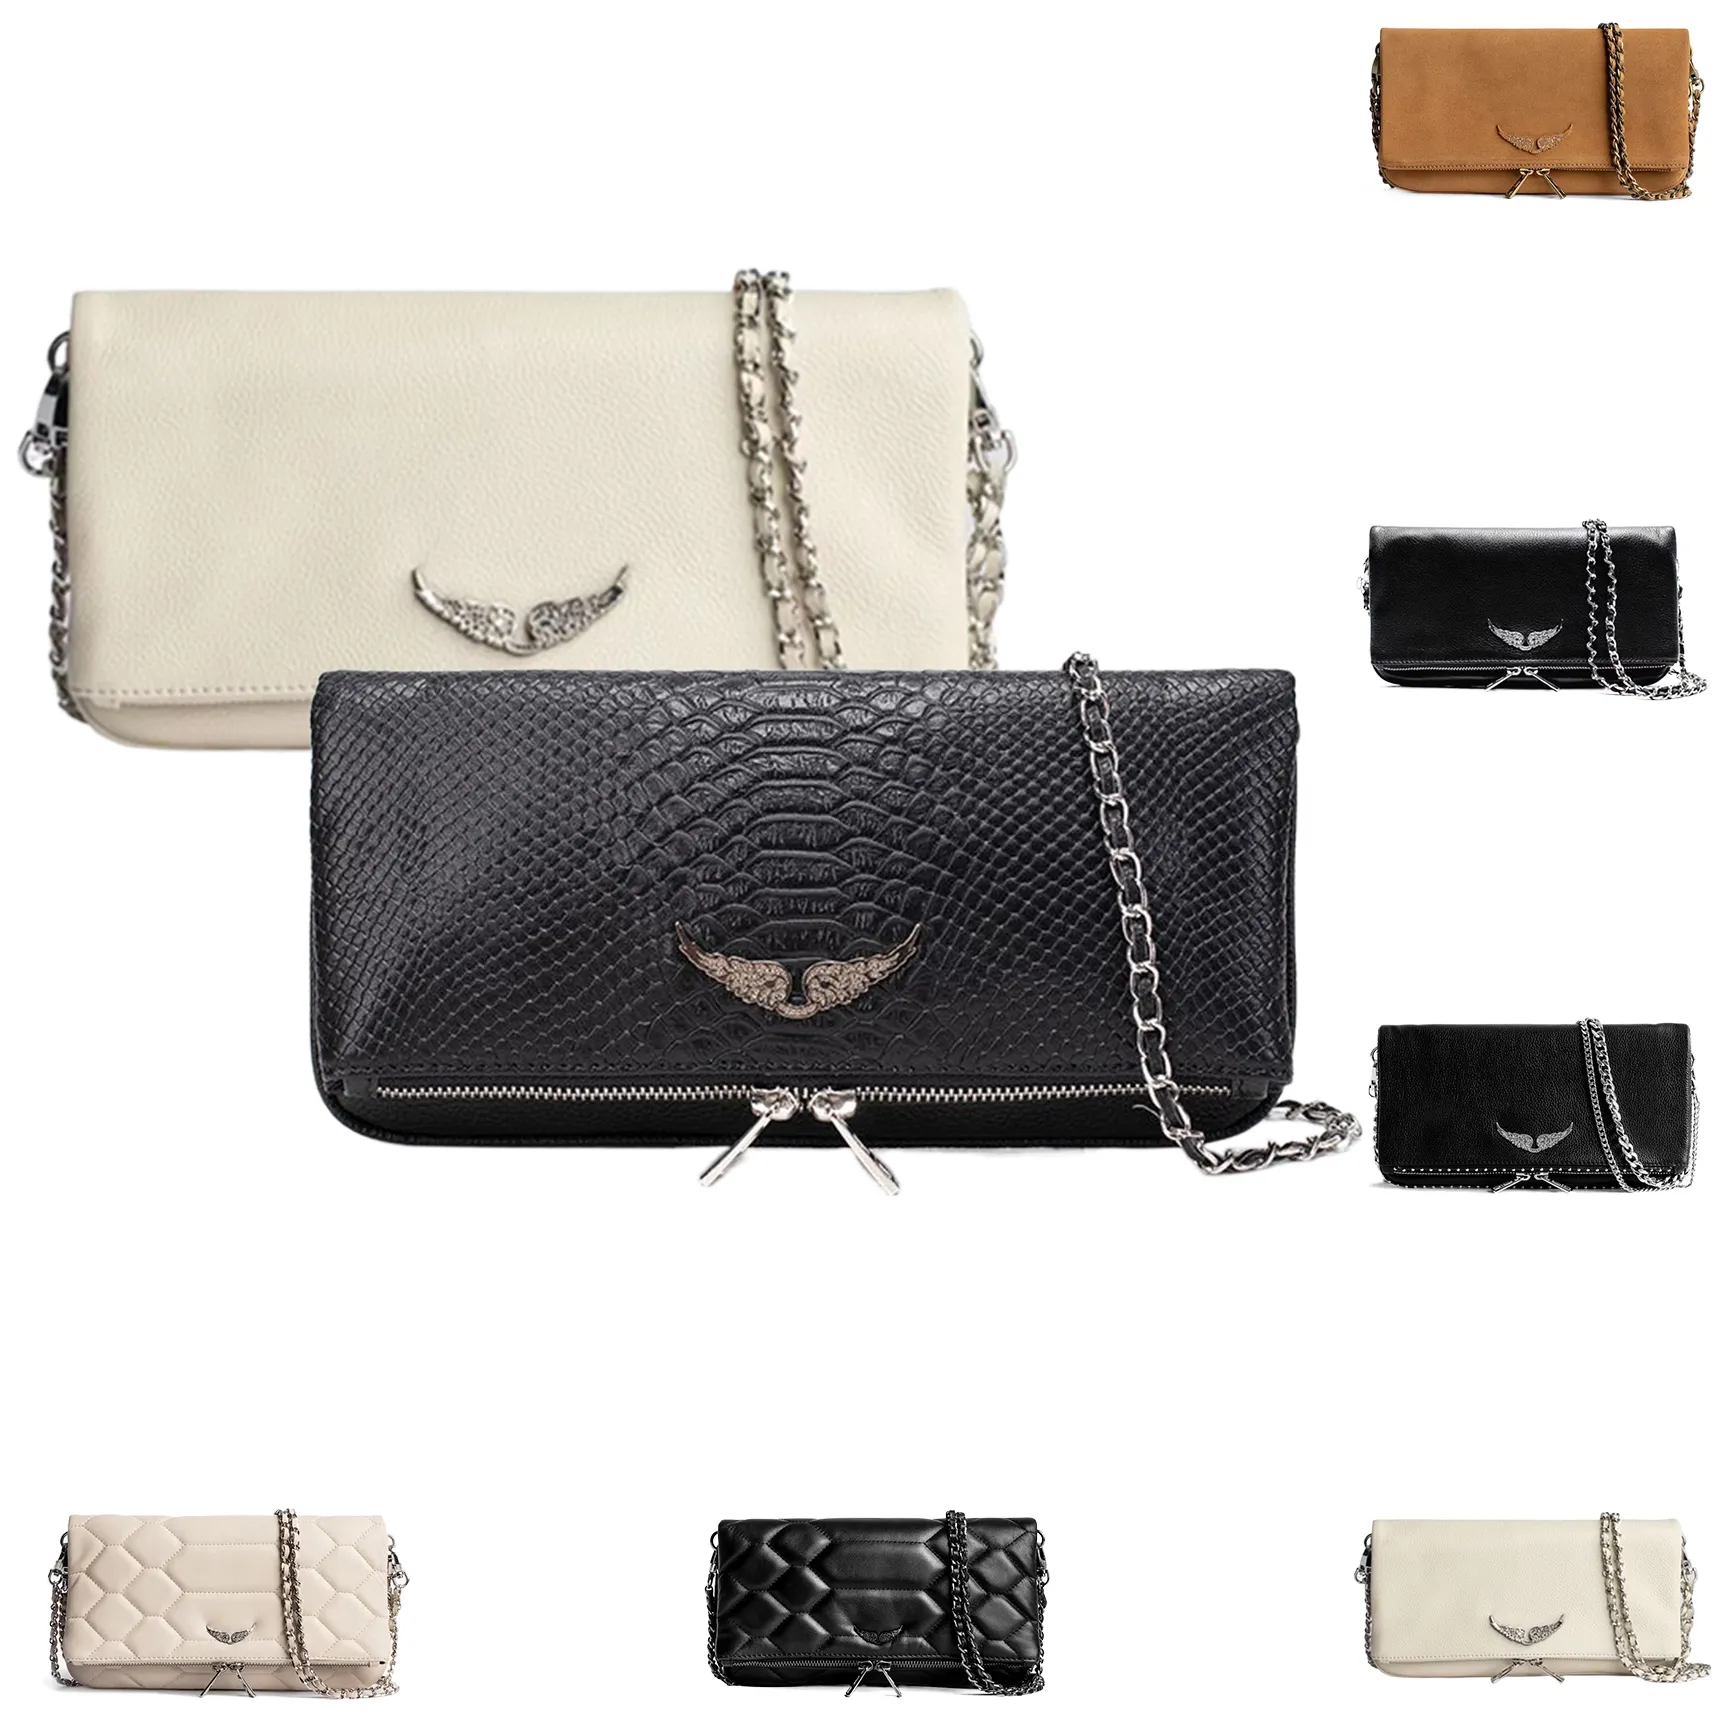 Kadın Pochette Rock Swing Swing kanatları zadig voltaire çanta erkek cüzdan tote çanta omuz tasarımcısı zarf çantası orijinal deri de debriyaj flip çapraz vücut çantaları